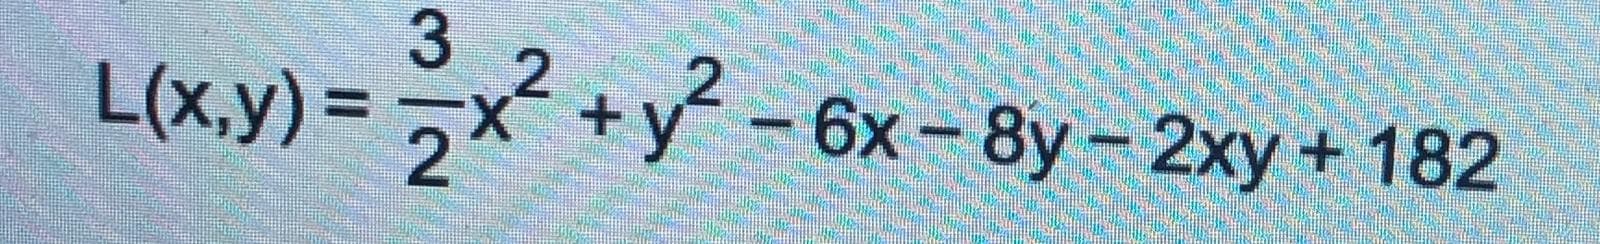 L(x,y) =
x +у - 6х - 8y- 2ху + 182
3/2
